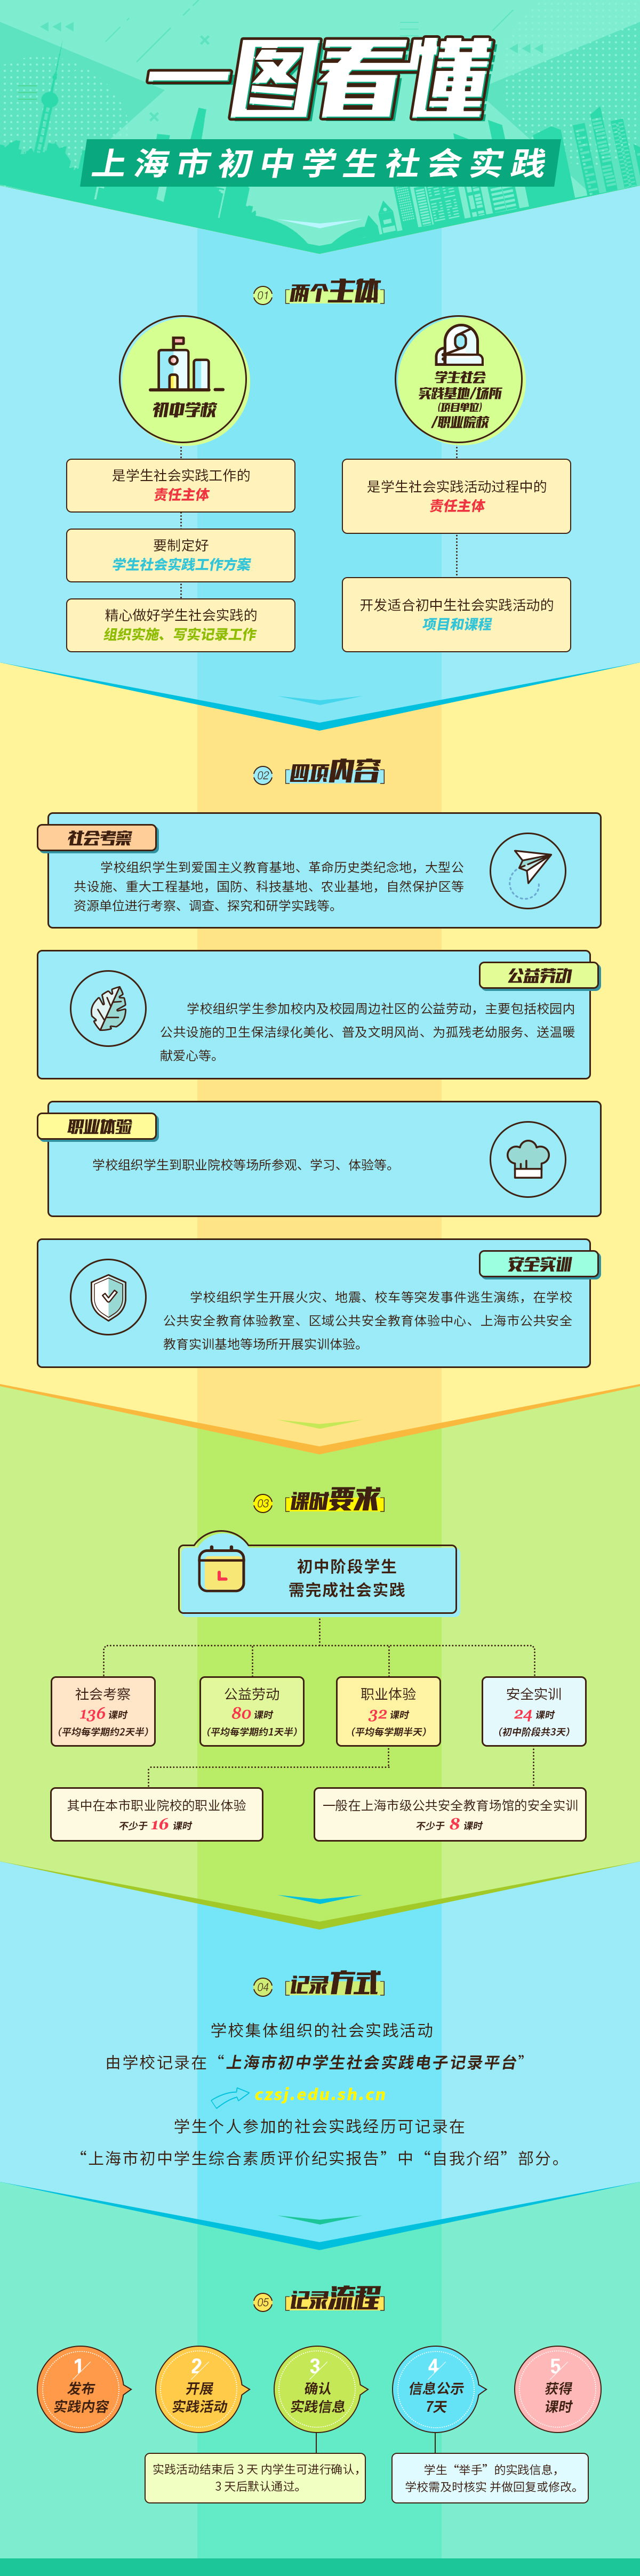 一图看懂“上海市初中学生社会实践”